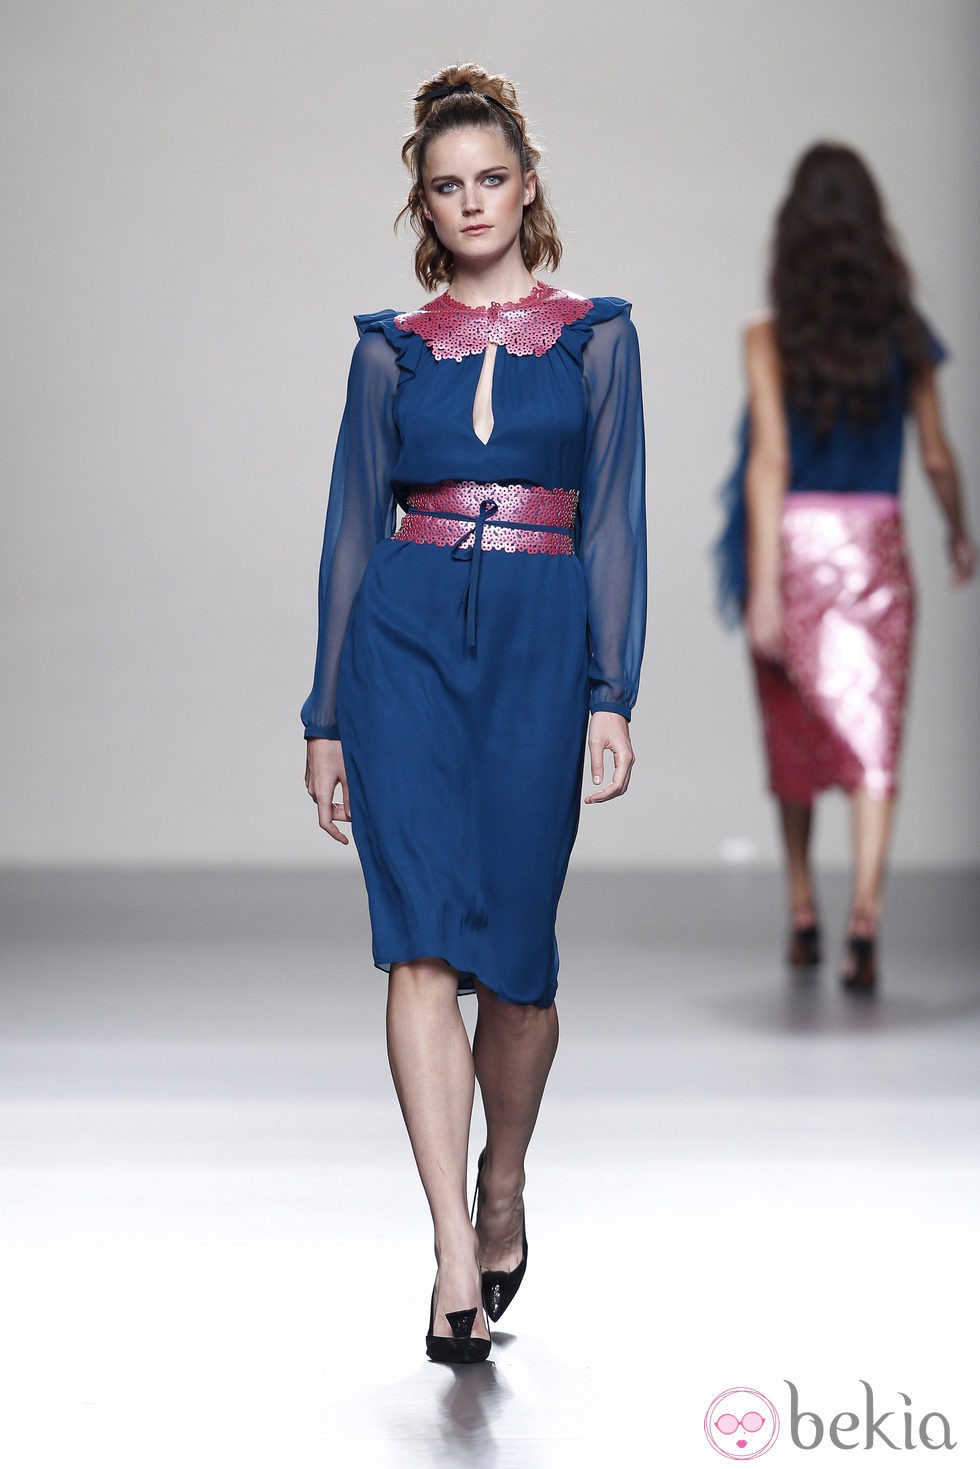 Vestido azul con adornos rosas de la colección primavera/verano 2014 de Miguel Palacio en Madrid Fashion